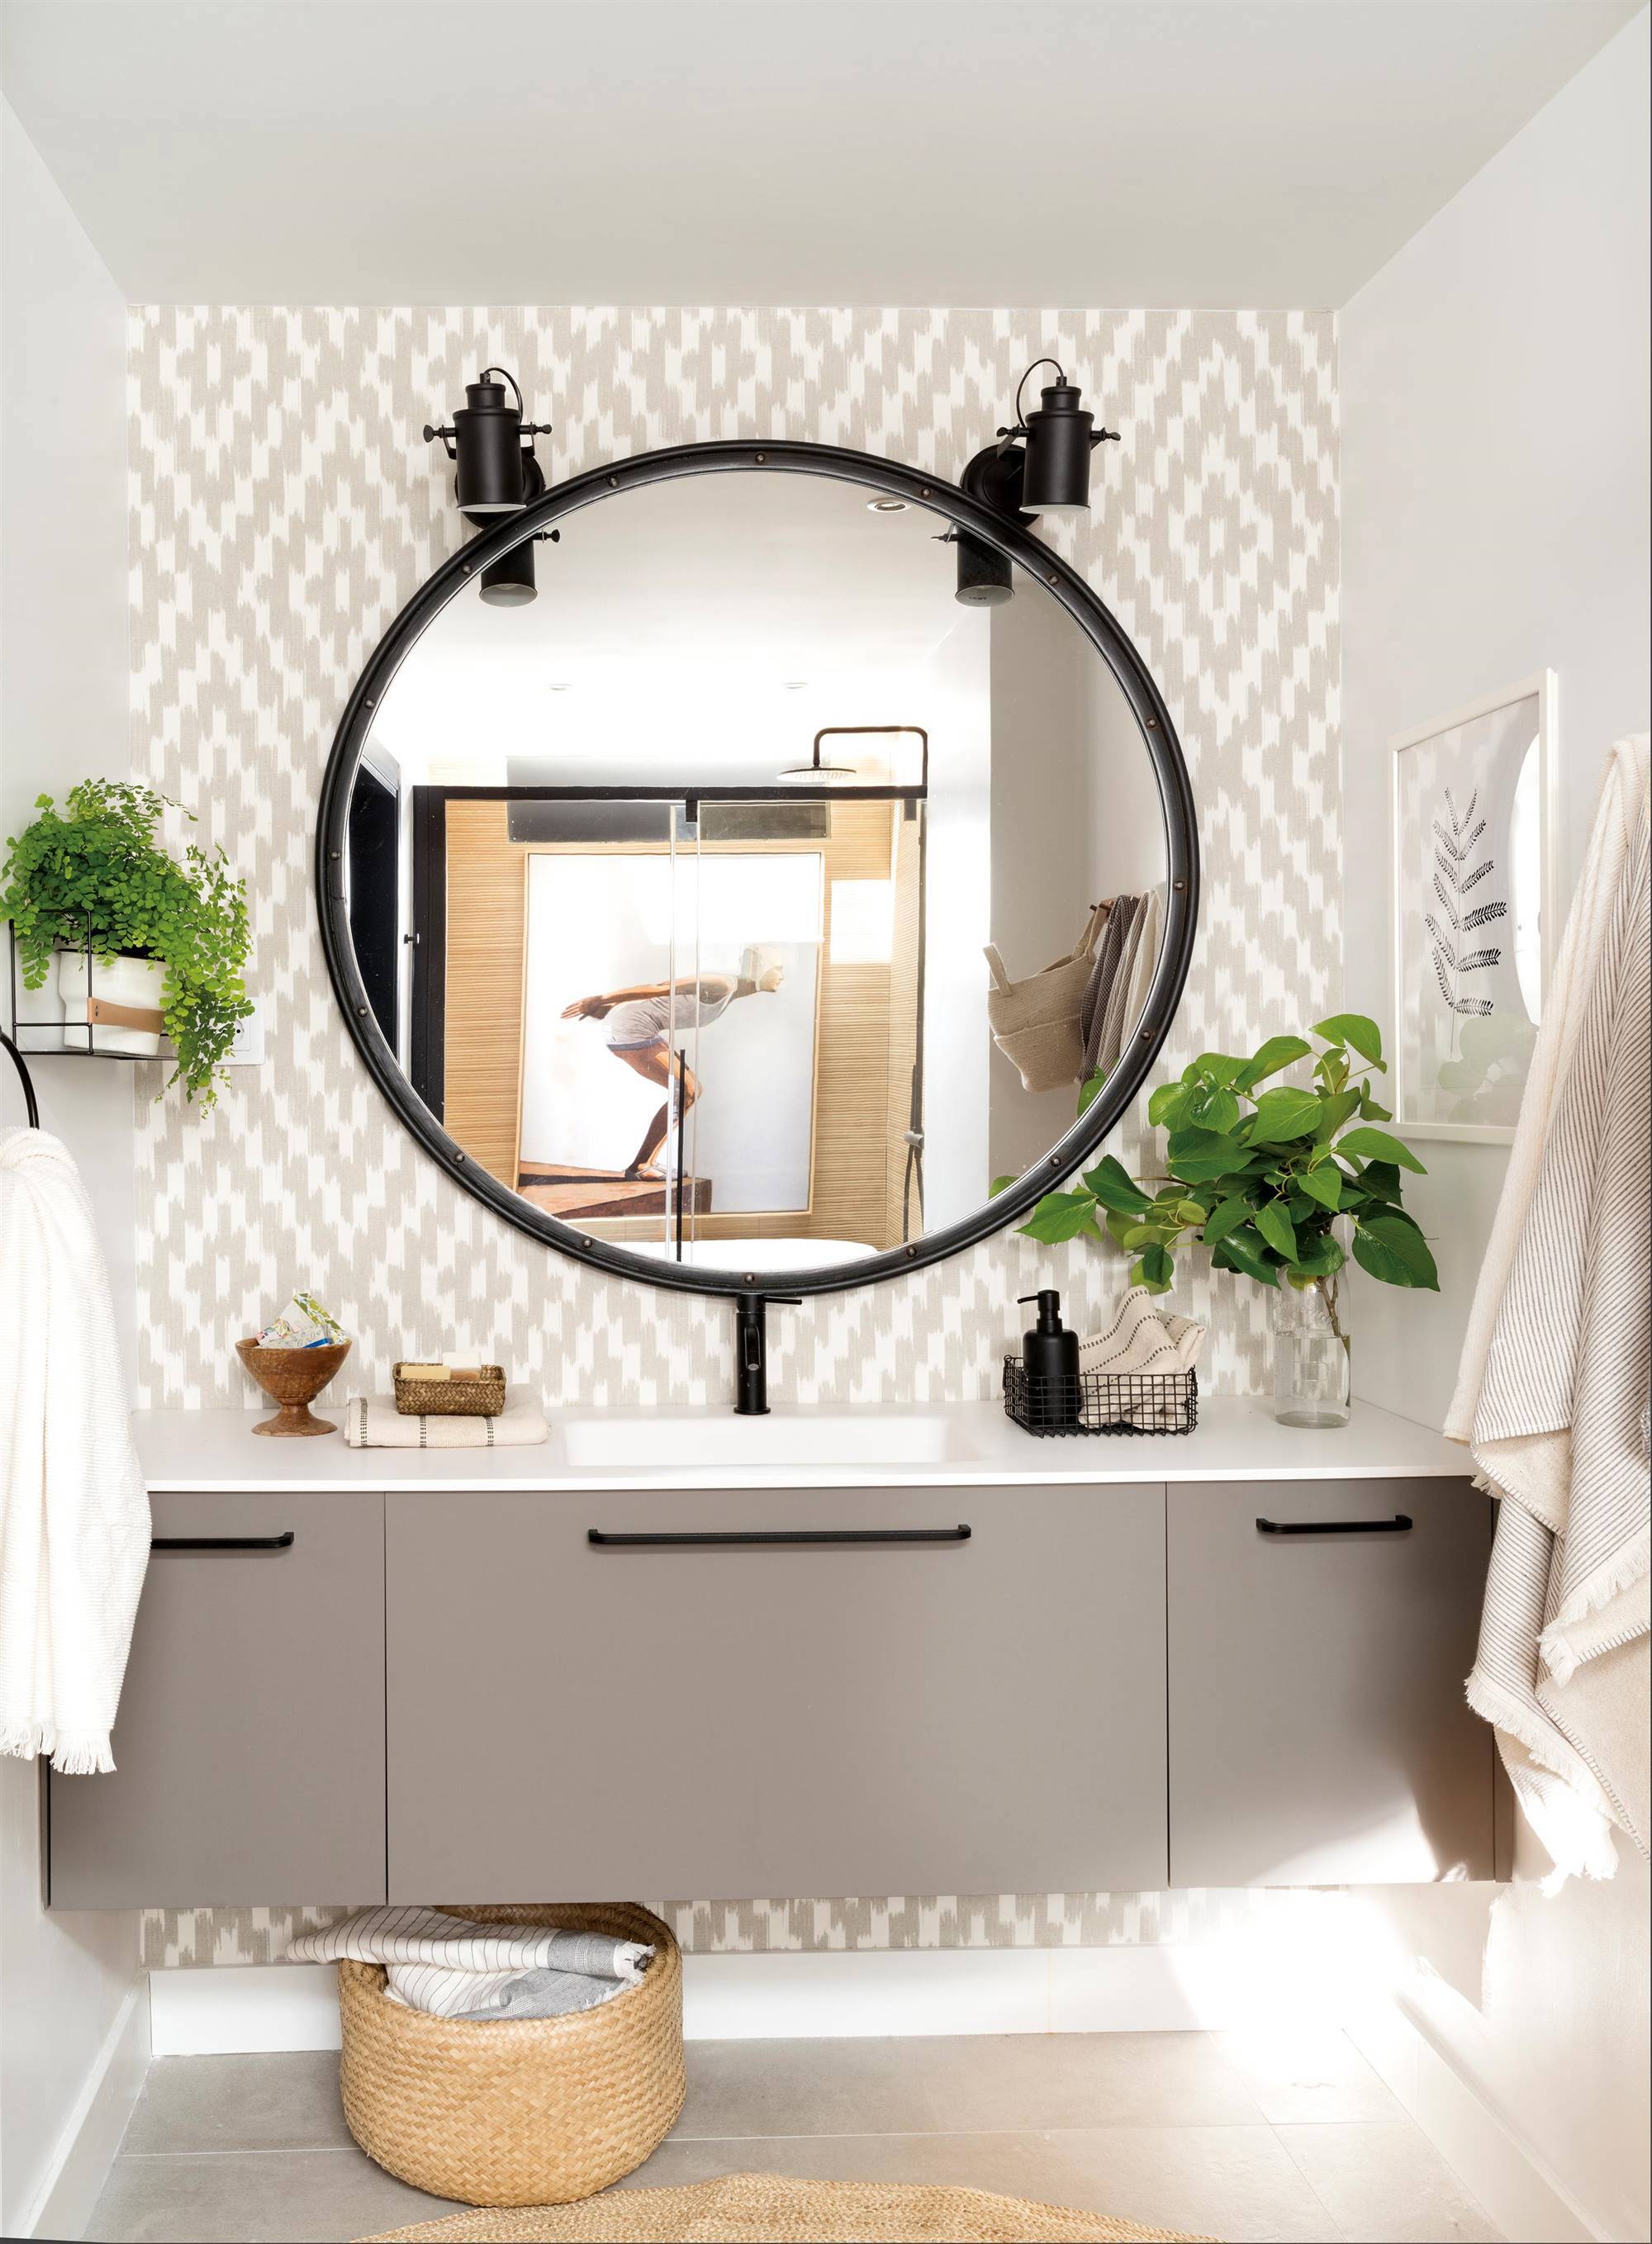 Baños con espejos redondos: razones por quedan tan estilosos